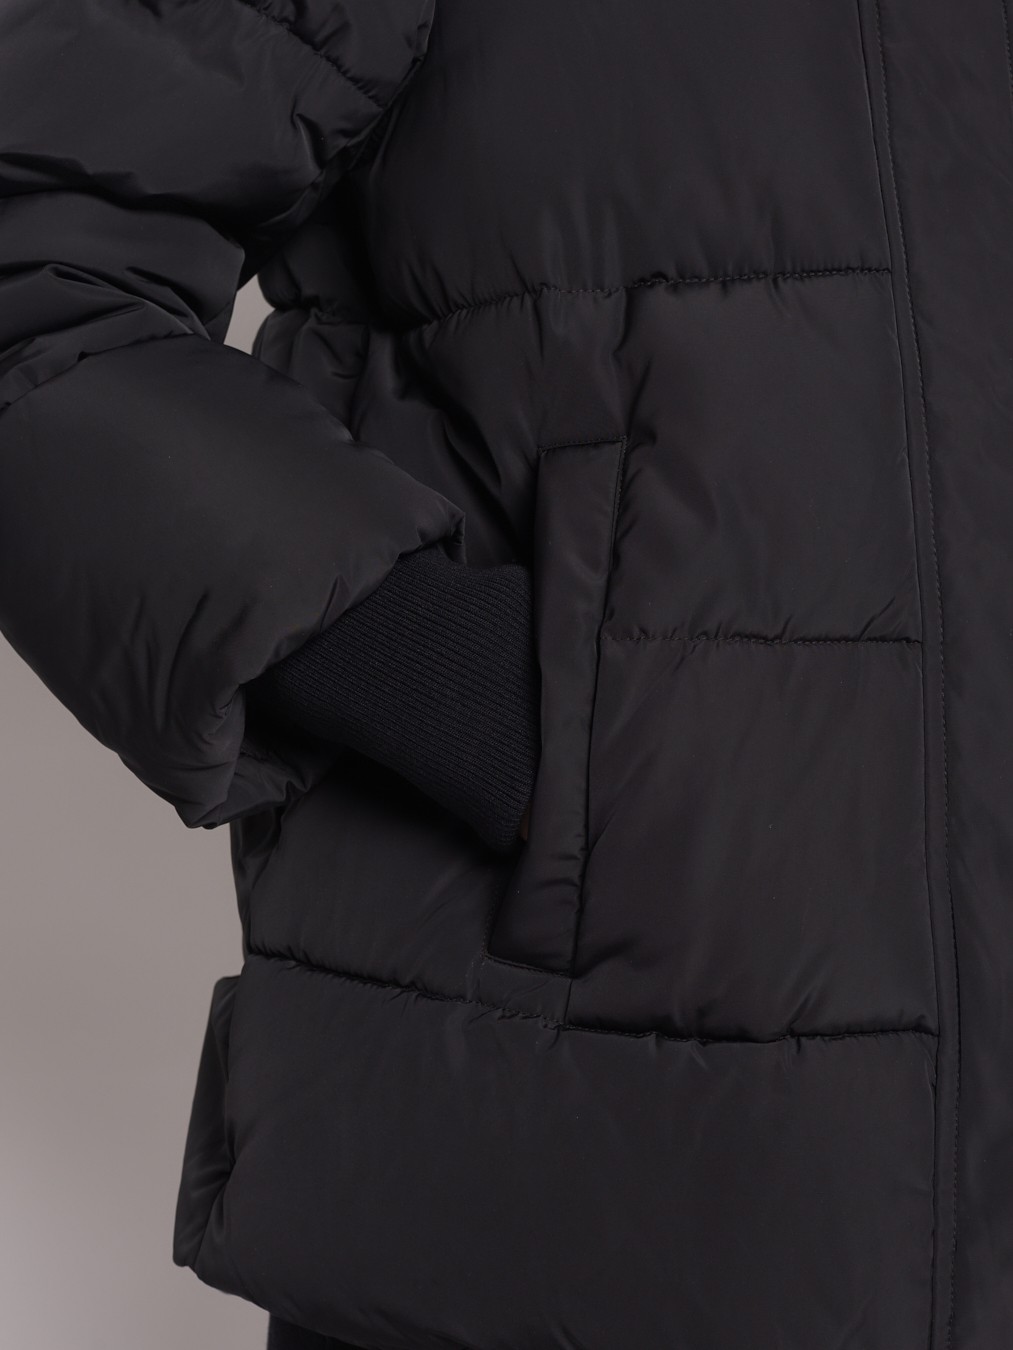 Тёплая куртка с удлинёнными манжетами zolla 022345102284, цвет черный, размер S - фото 5